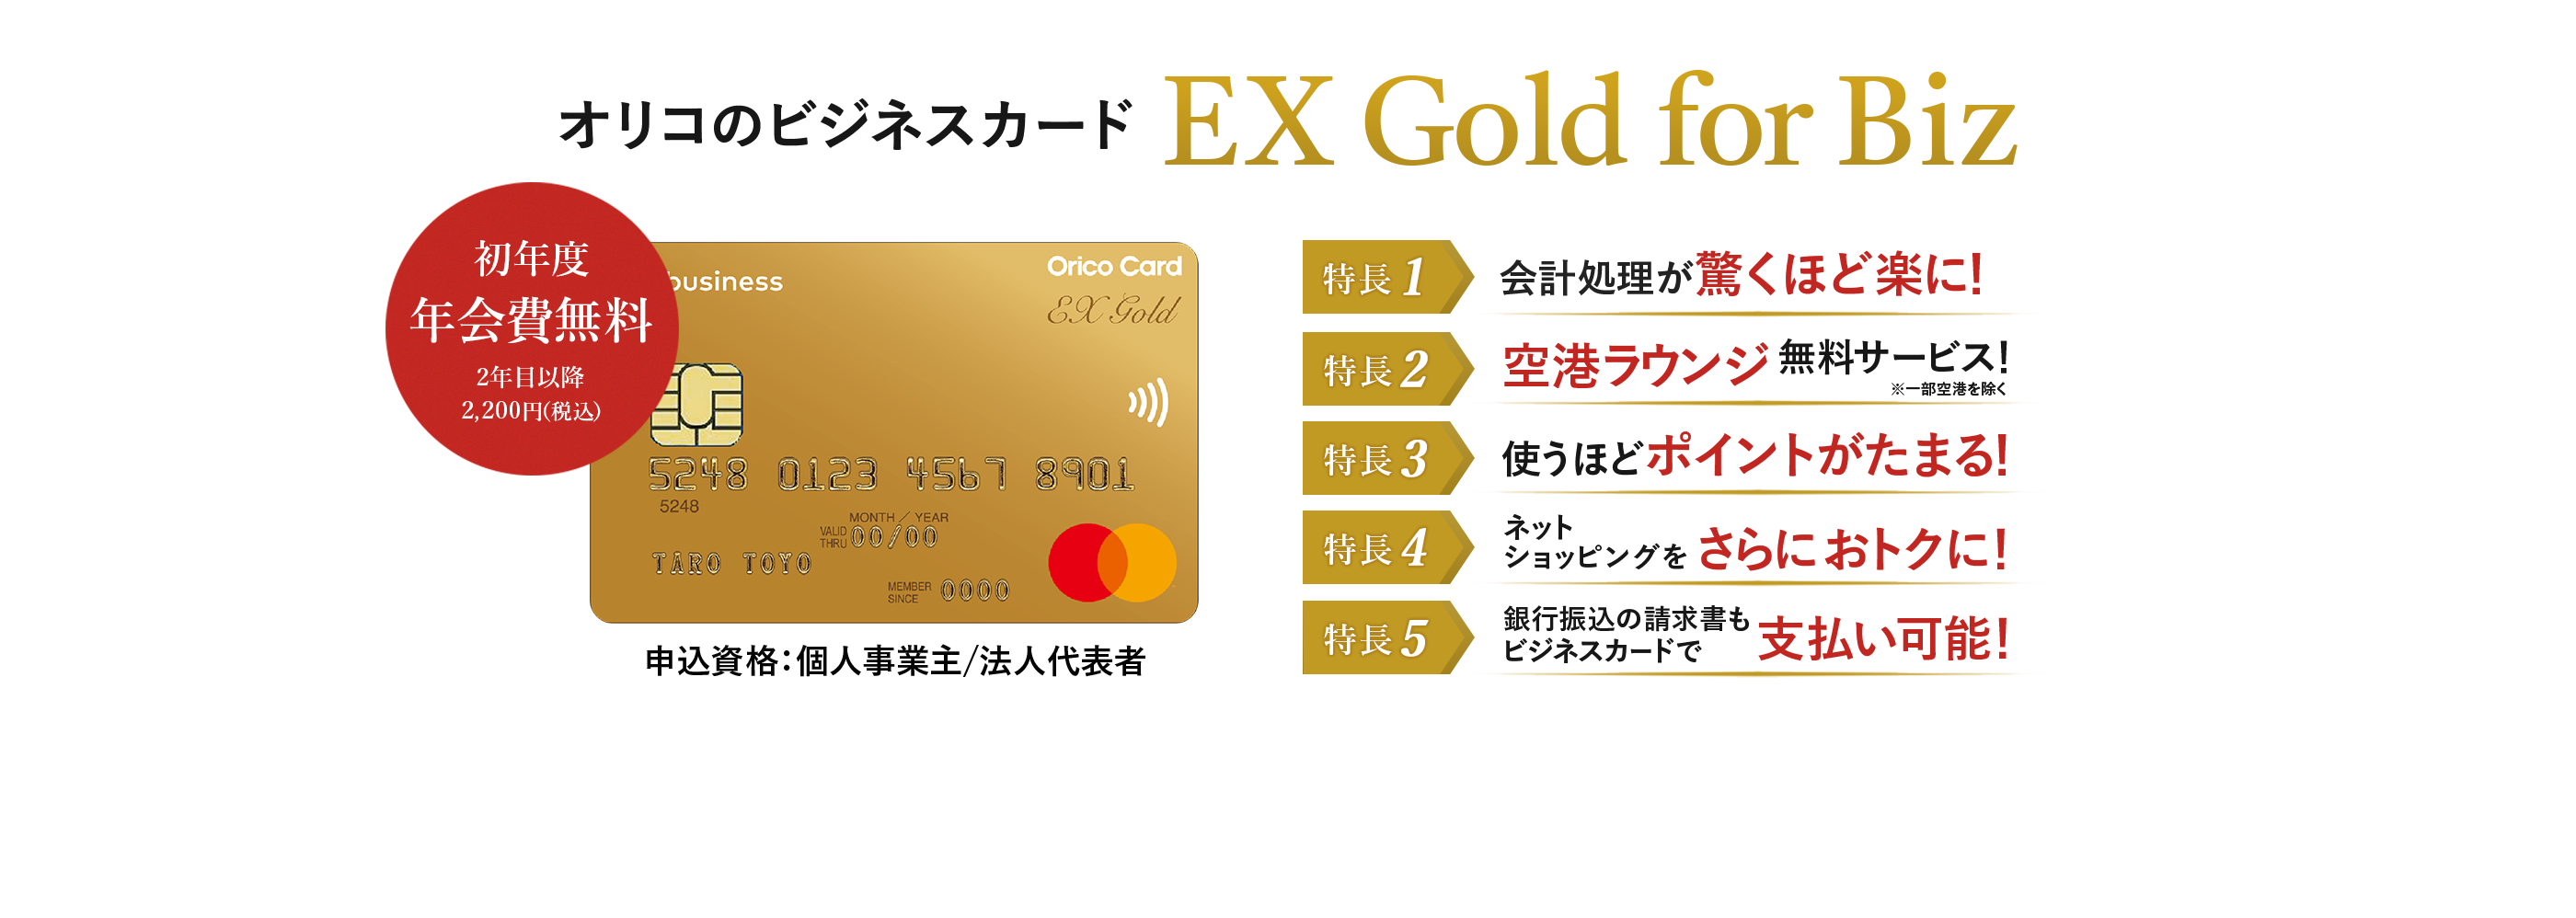 オリコのビジネスカード EX Gold for Biz